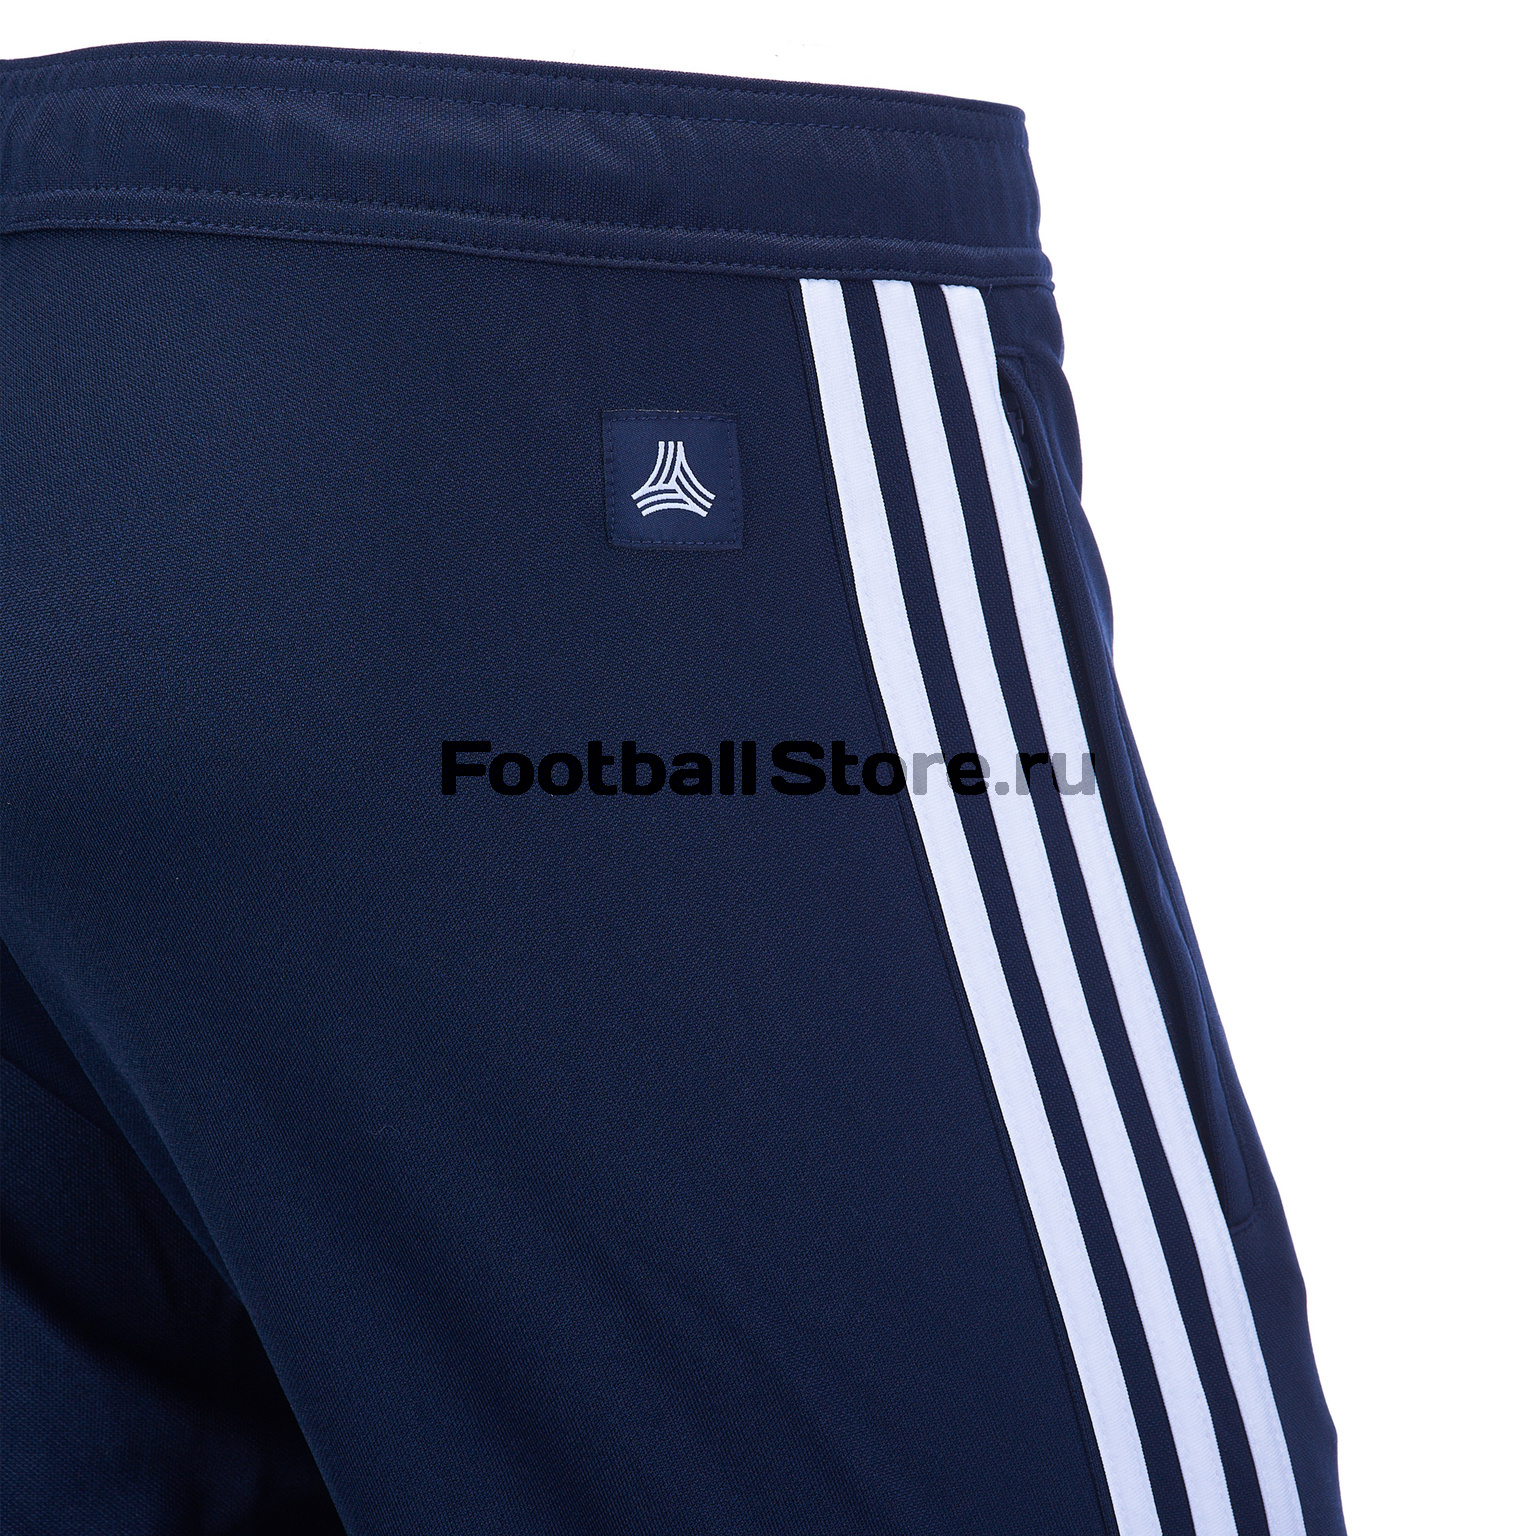 Брюки тренировочные Adidas Tango CZ8691 – купить в интернет магазинеfootballstore, цена, фото